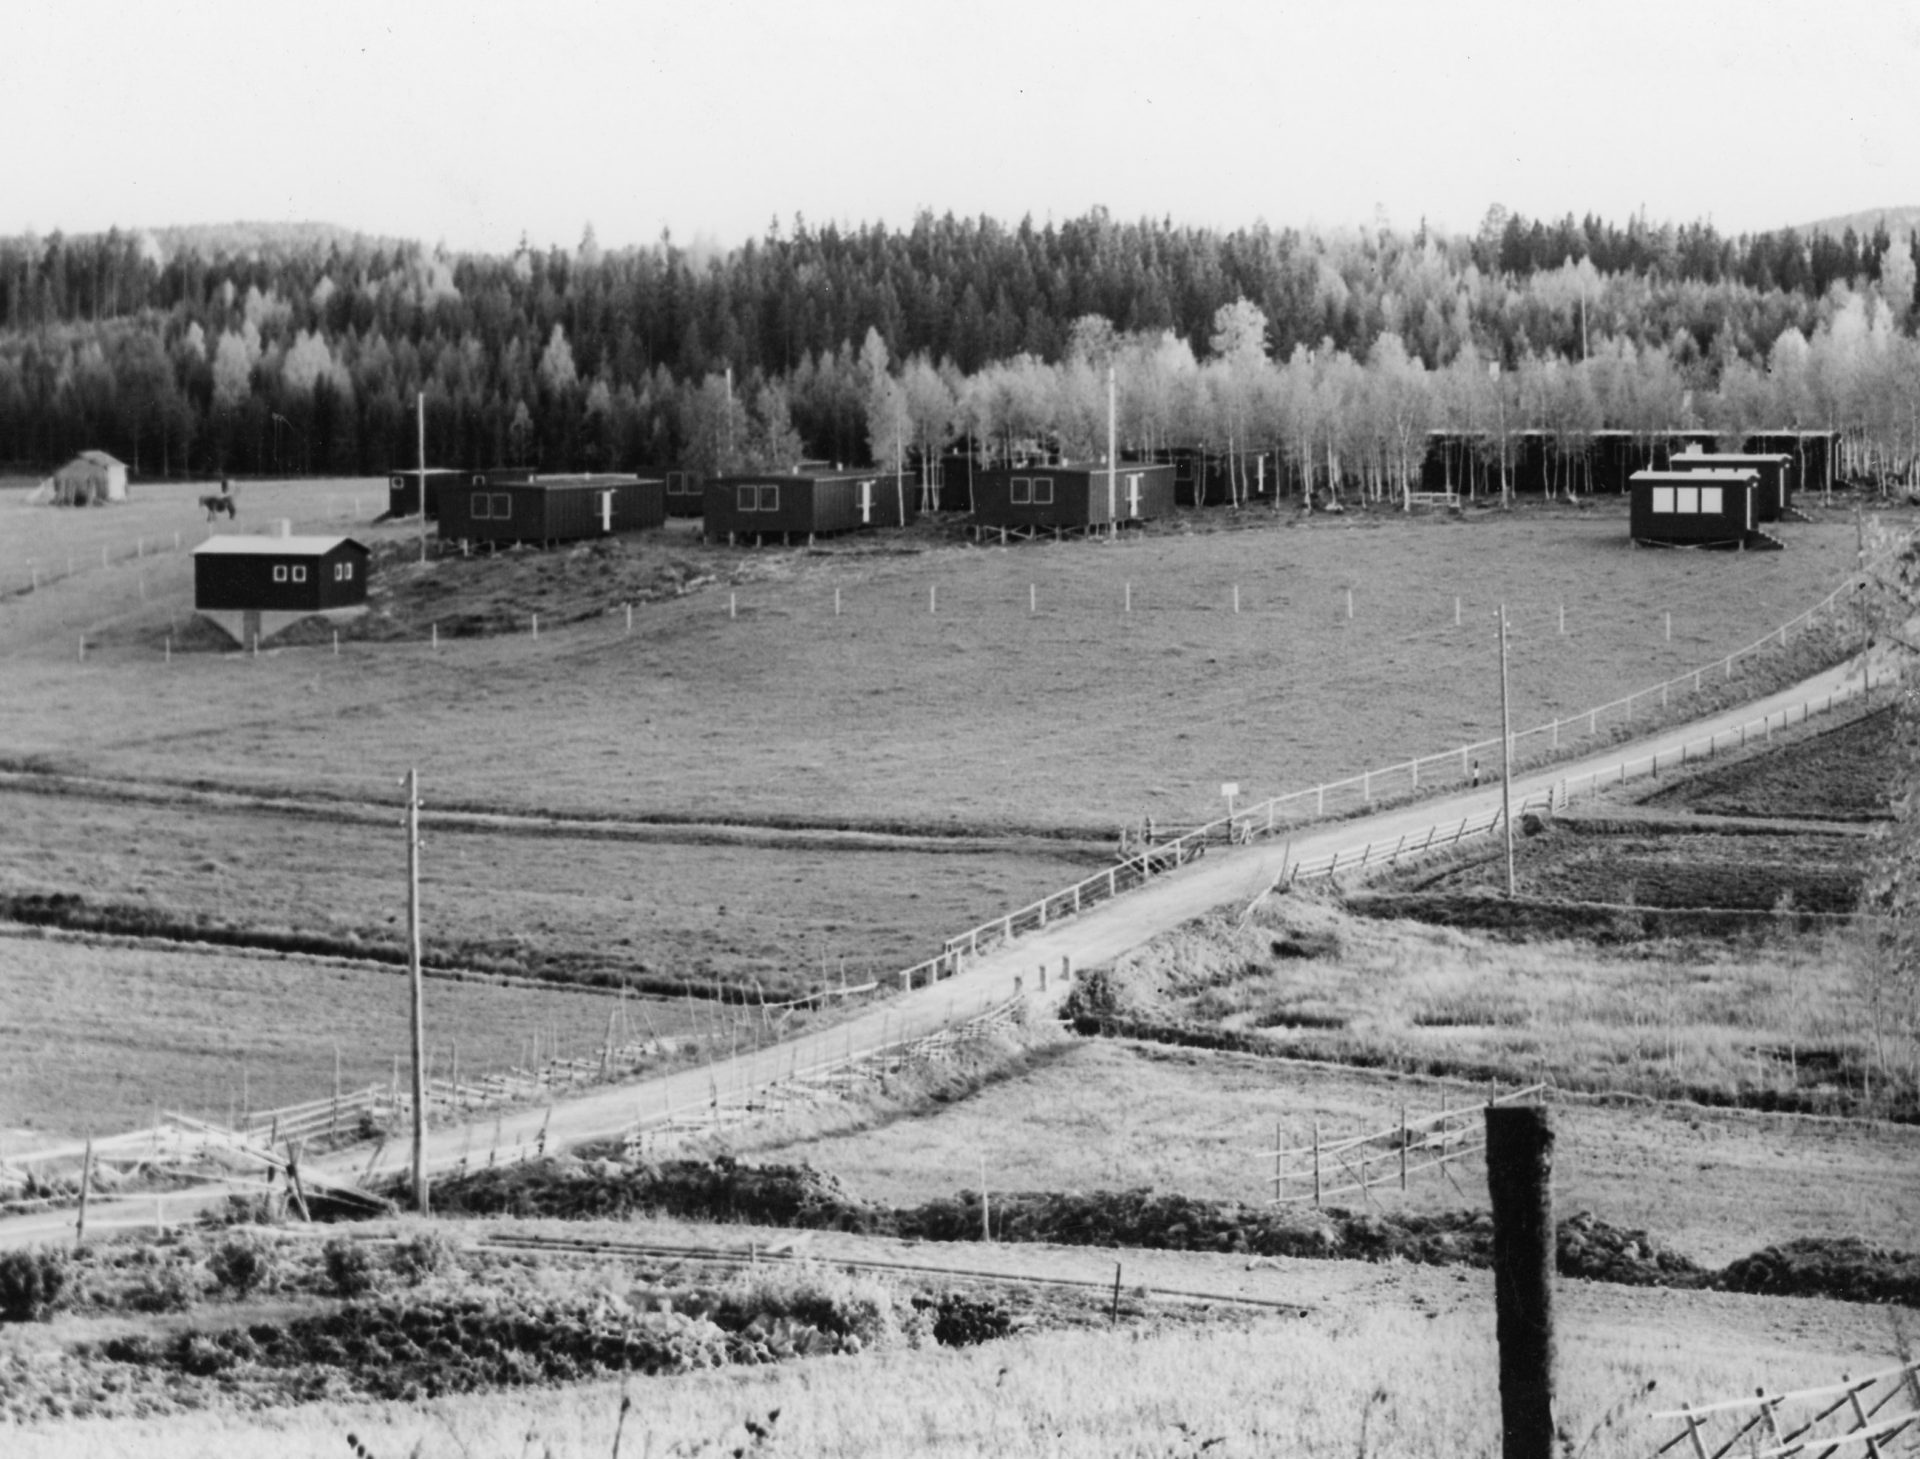 Interneringsläger i Hälsingland, på bilden syns hus vid ett skogsparti och i förgrunden åkrar.